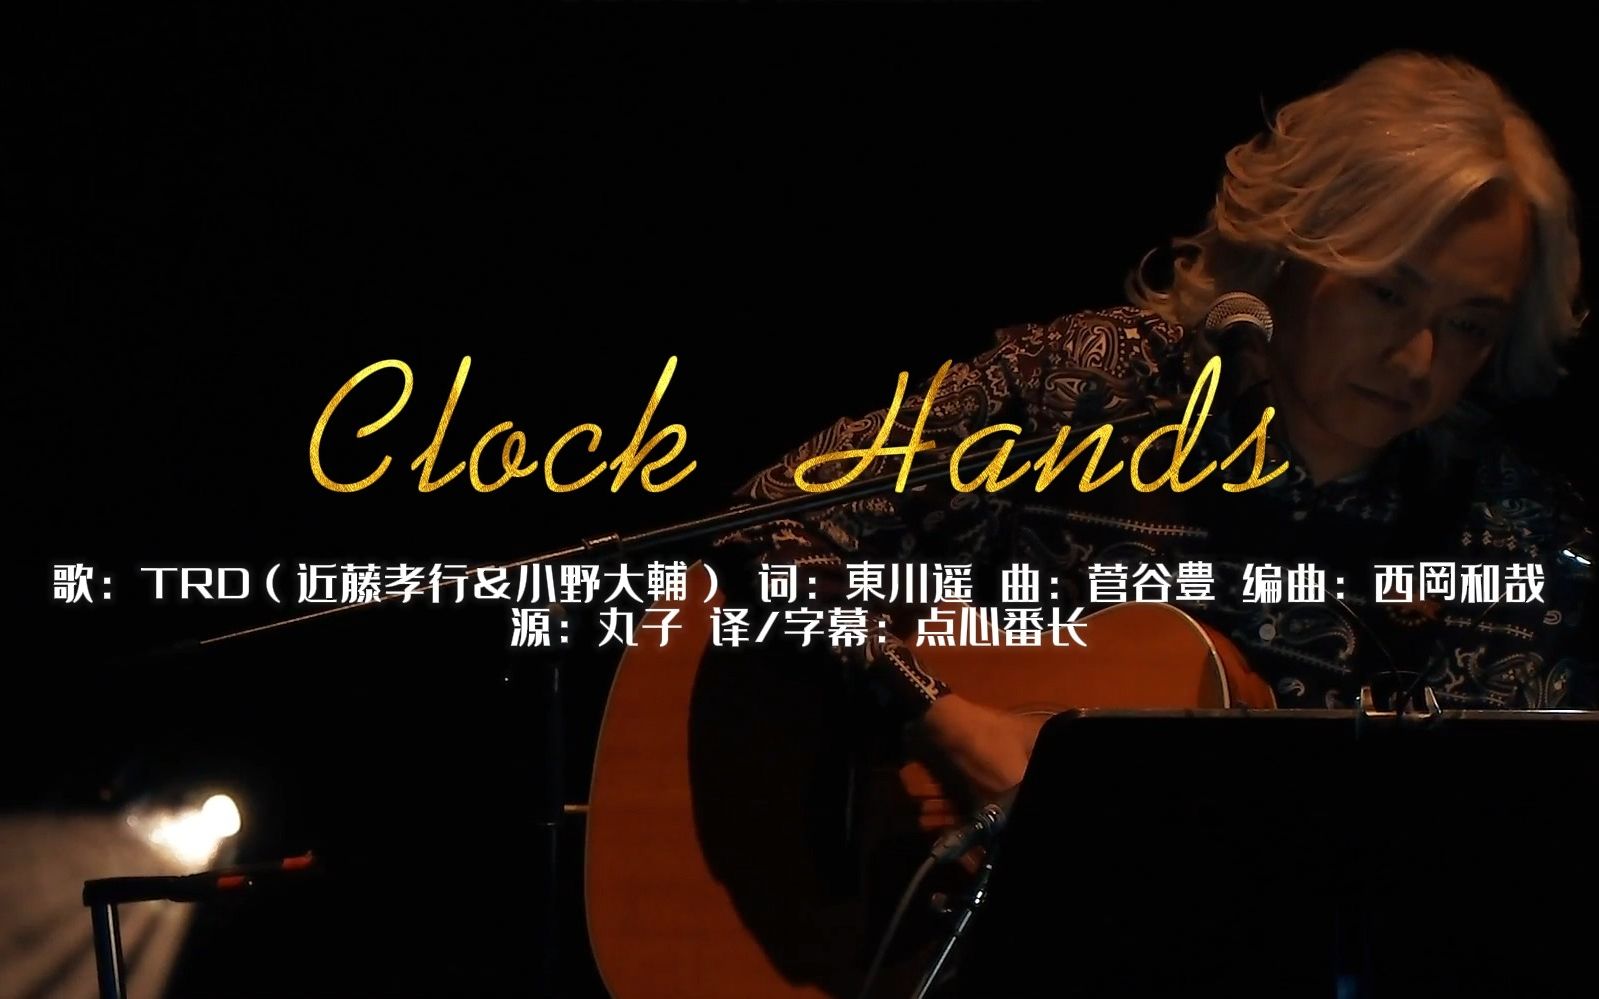 【中文字幕】【TRD】Clock Hands（近藤孝行&小野大辅） 情人节趴不插电版 西冈老师现场倾情伴奏